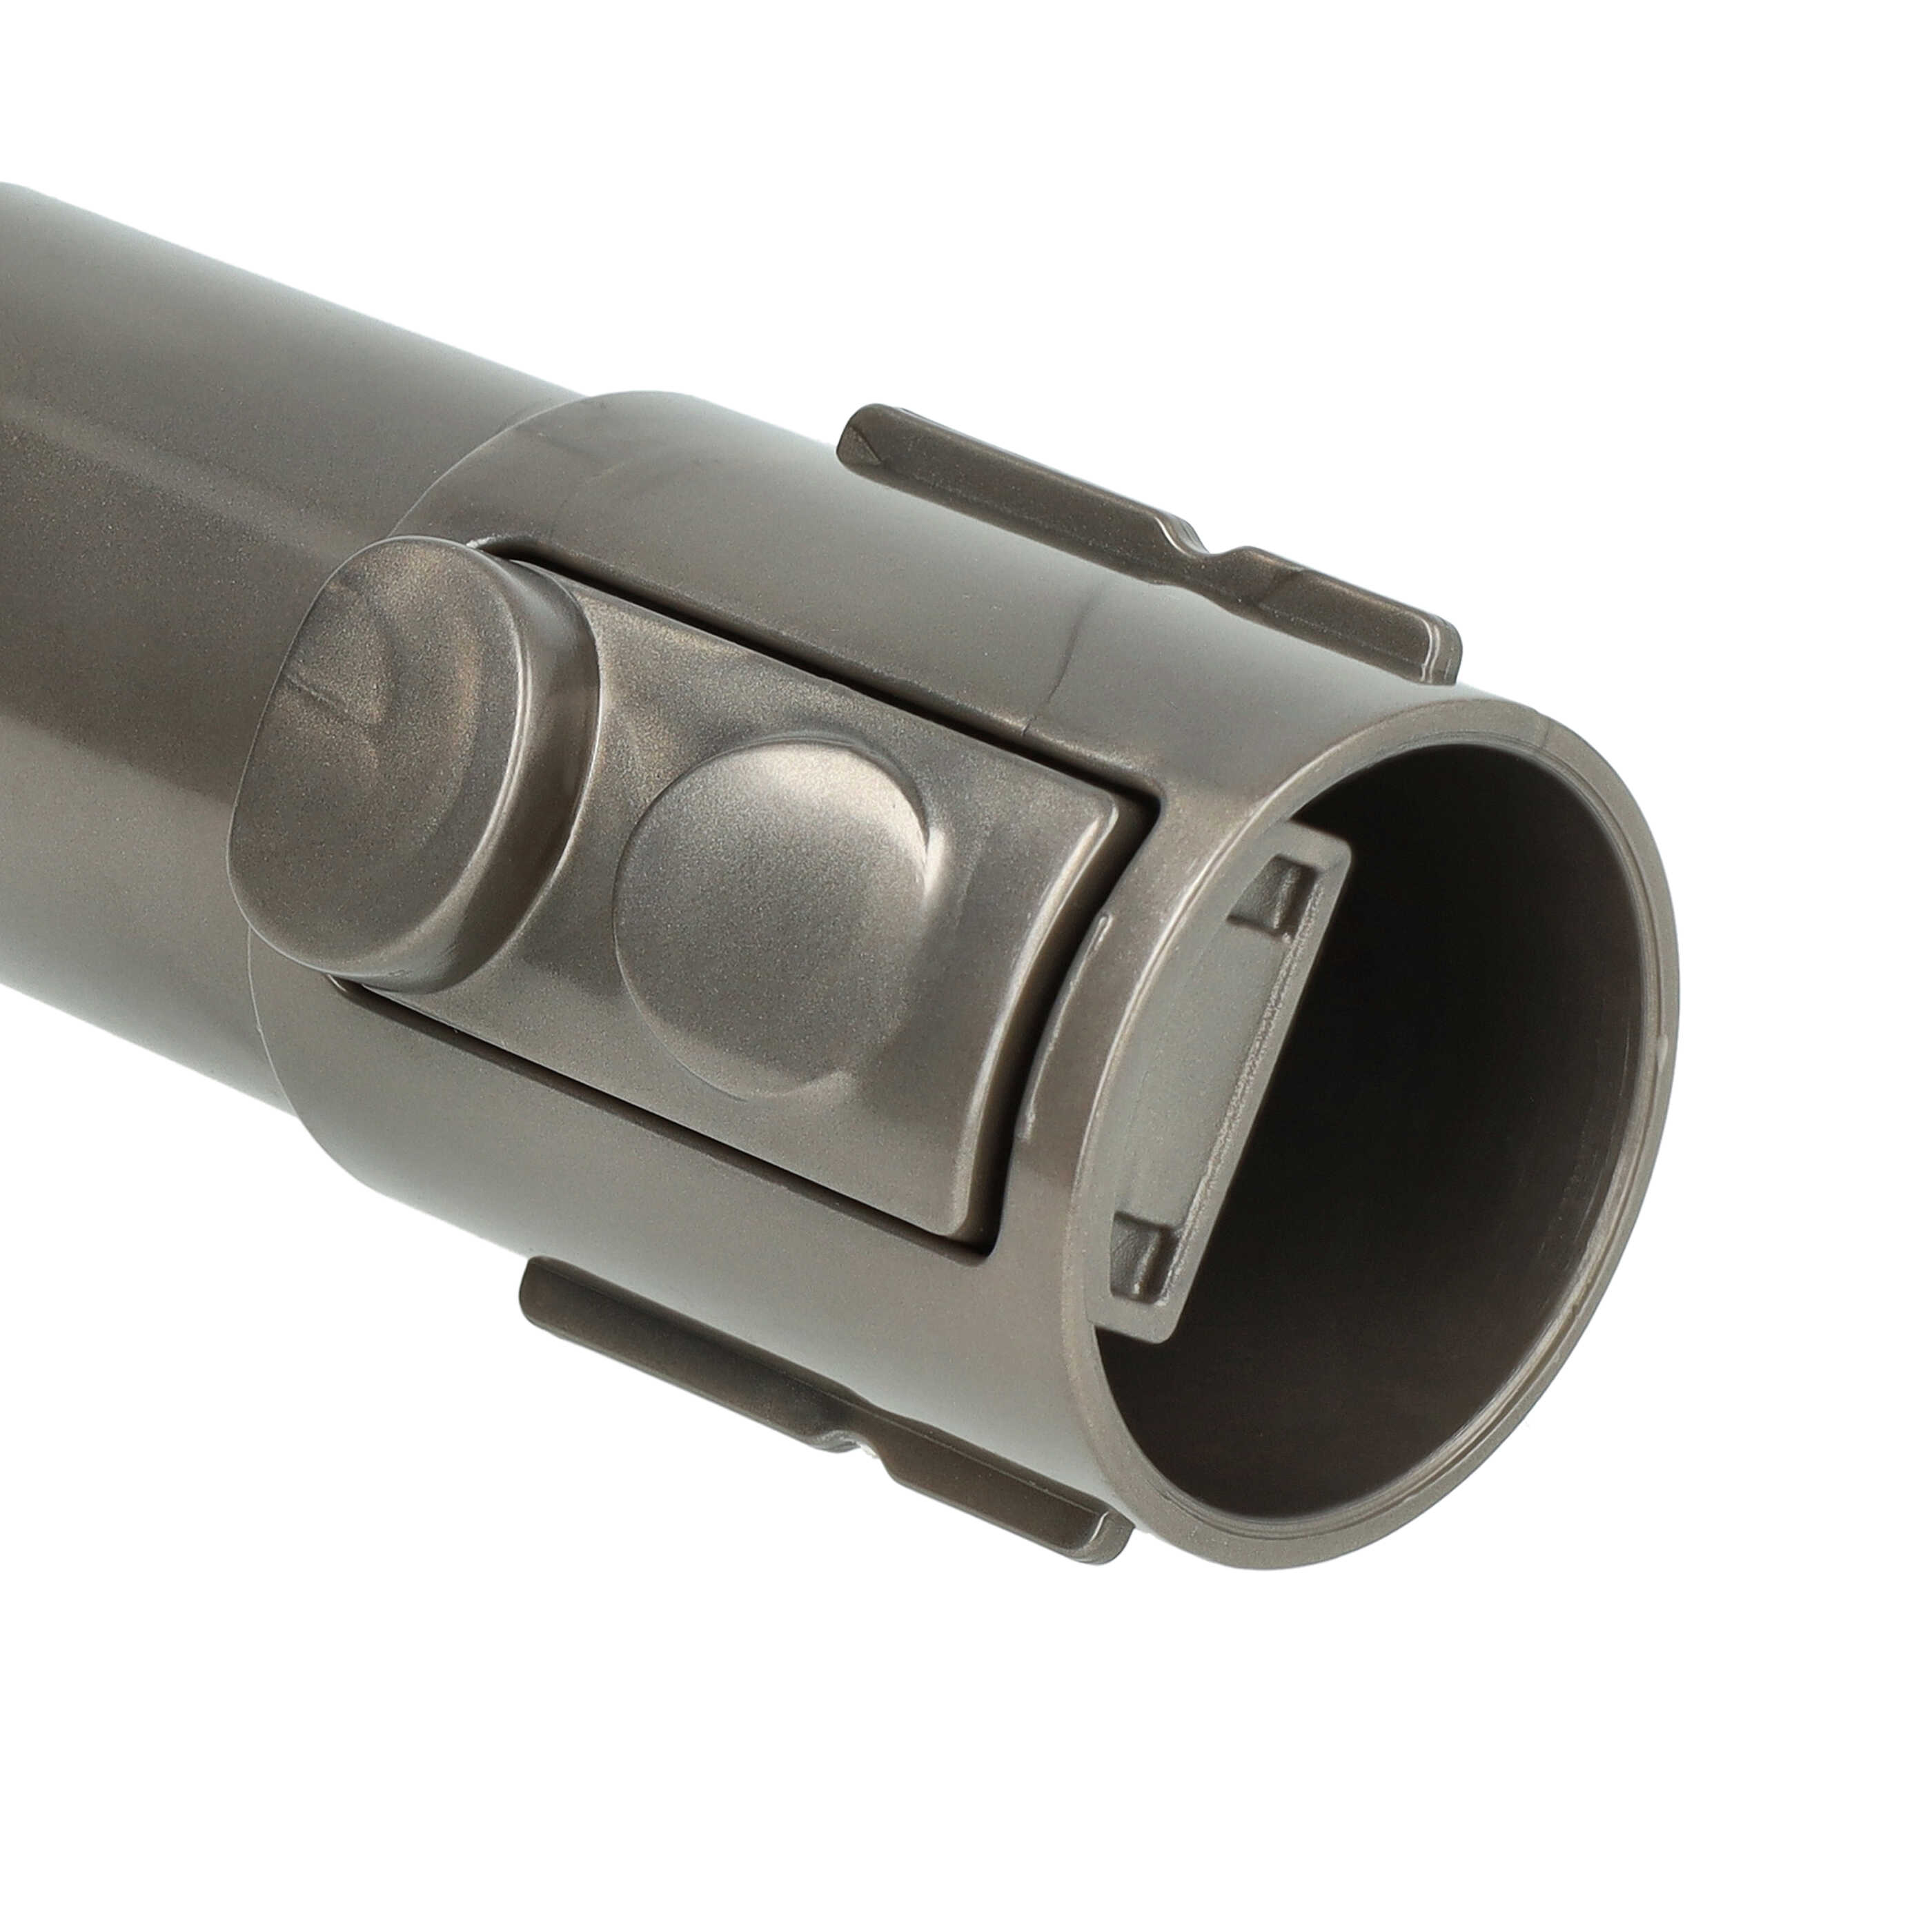 Raccordo con attacco accessori 32mm per aspiratore Dyson SV10 - grigio